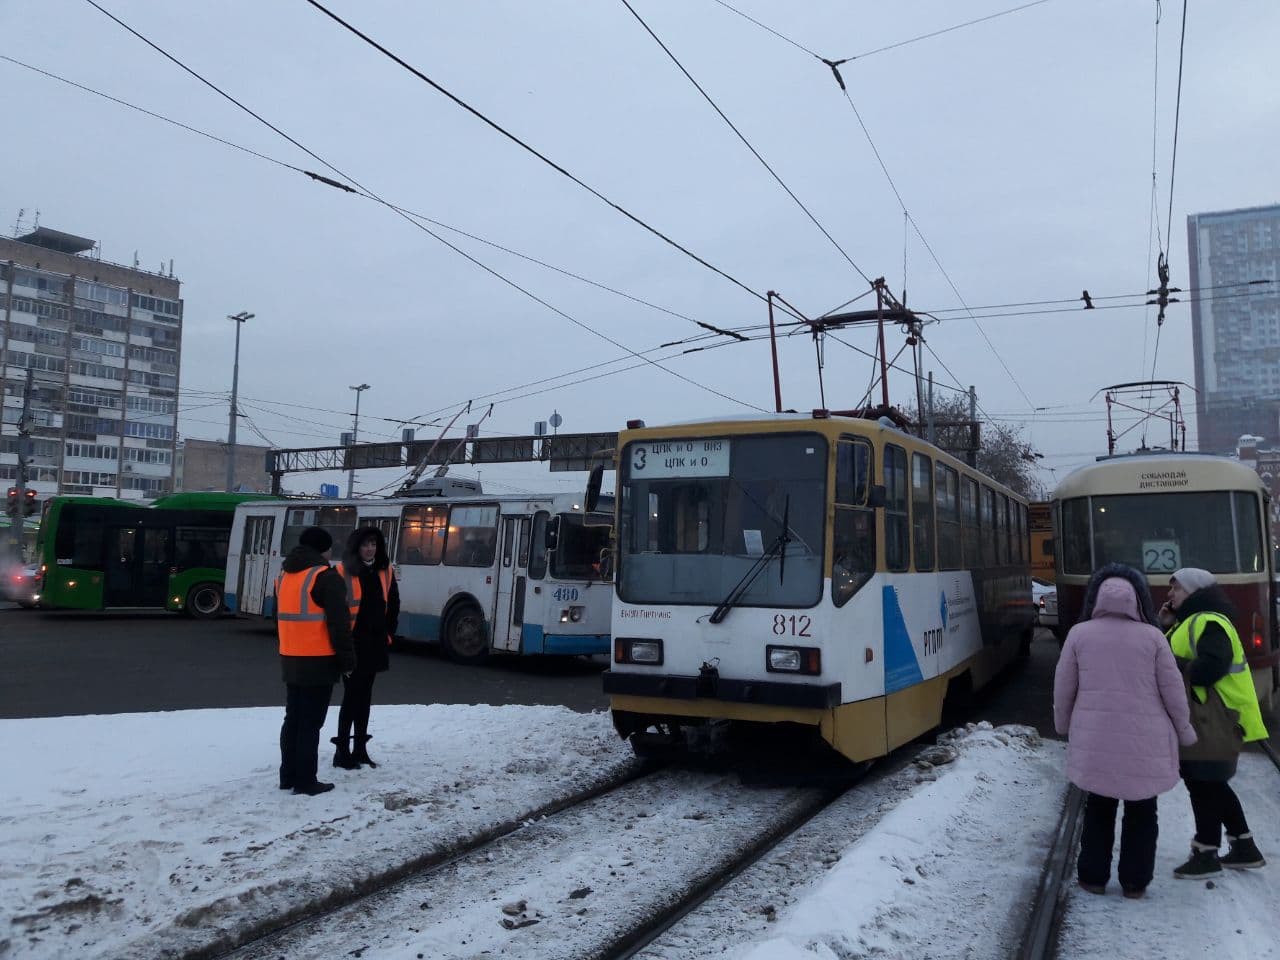 Трамваи и троллейбусы в пробке: напротив ж/д вокзала в Екатеринбурге произошел транспортный коллапс